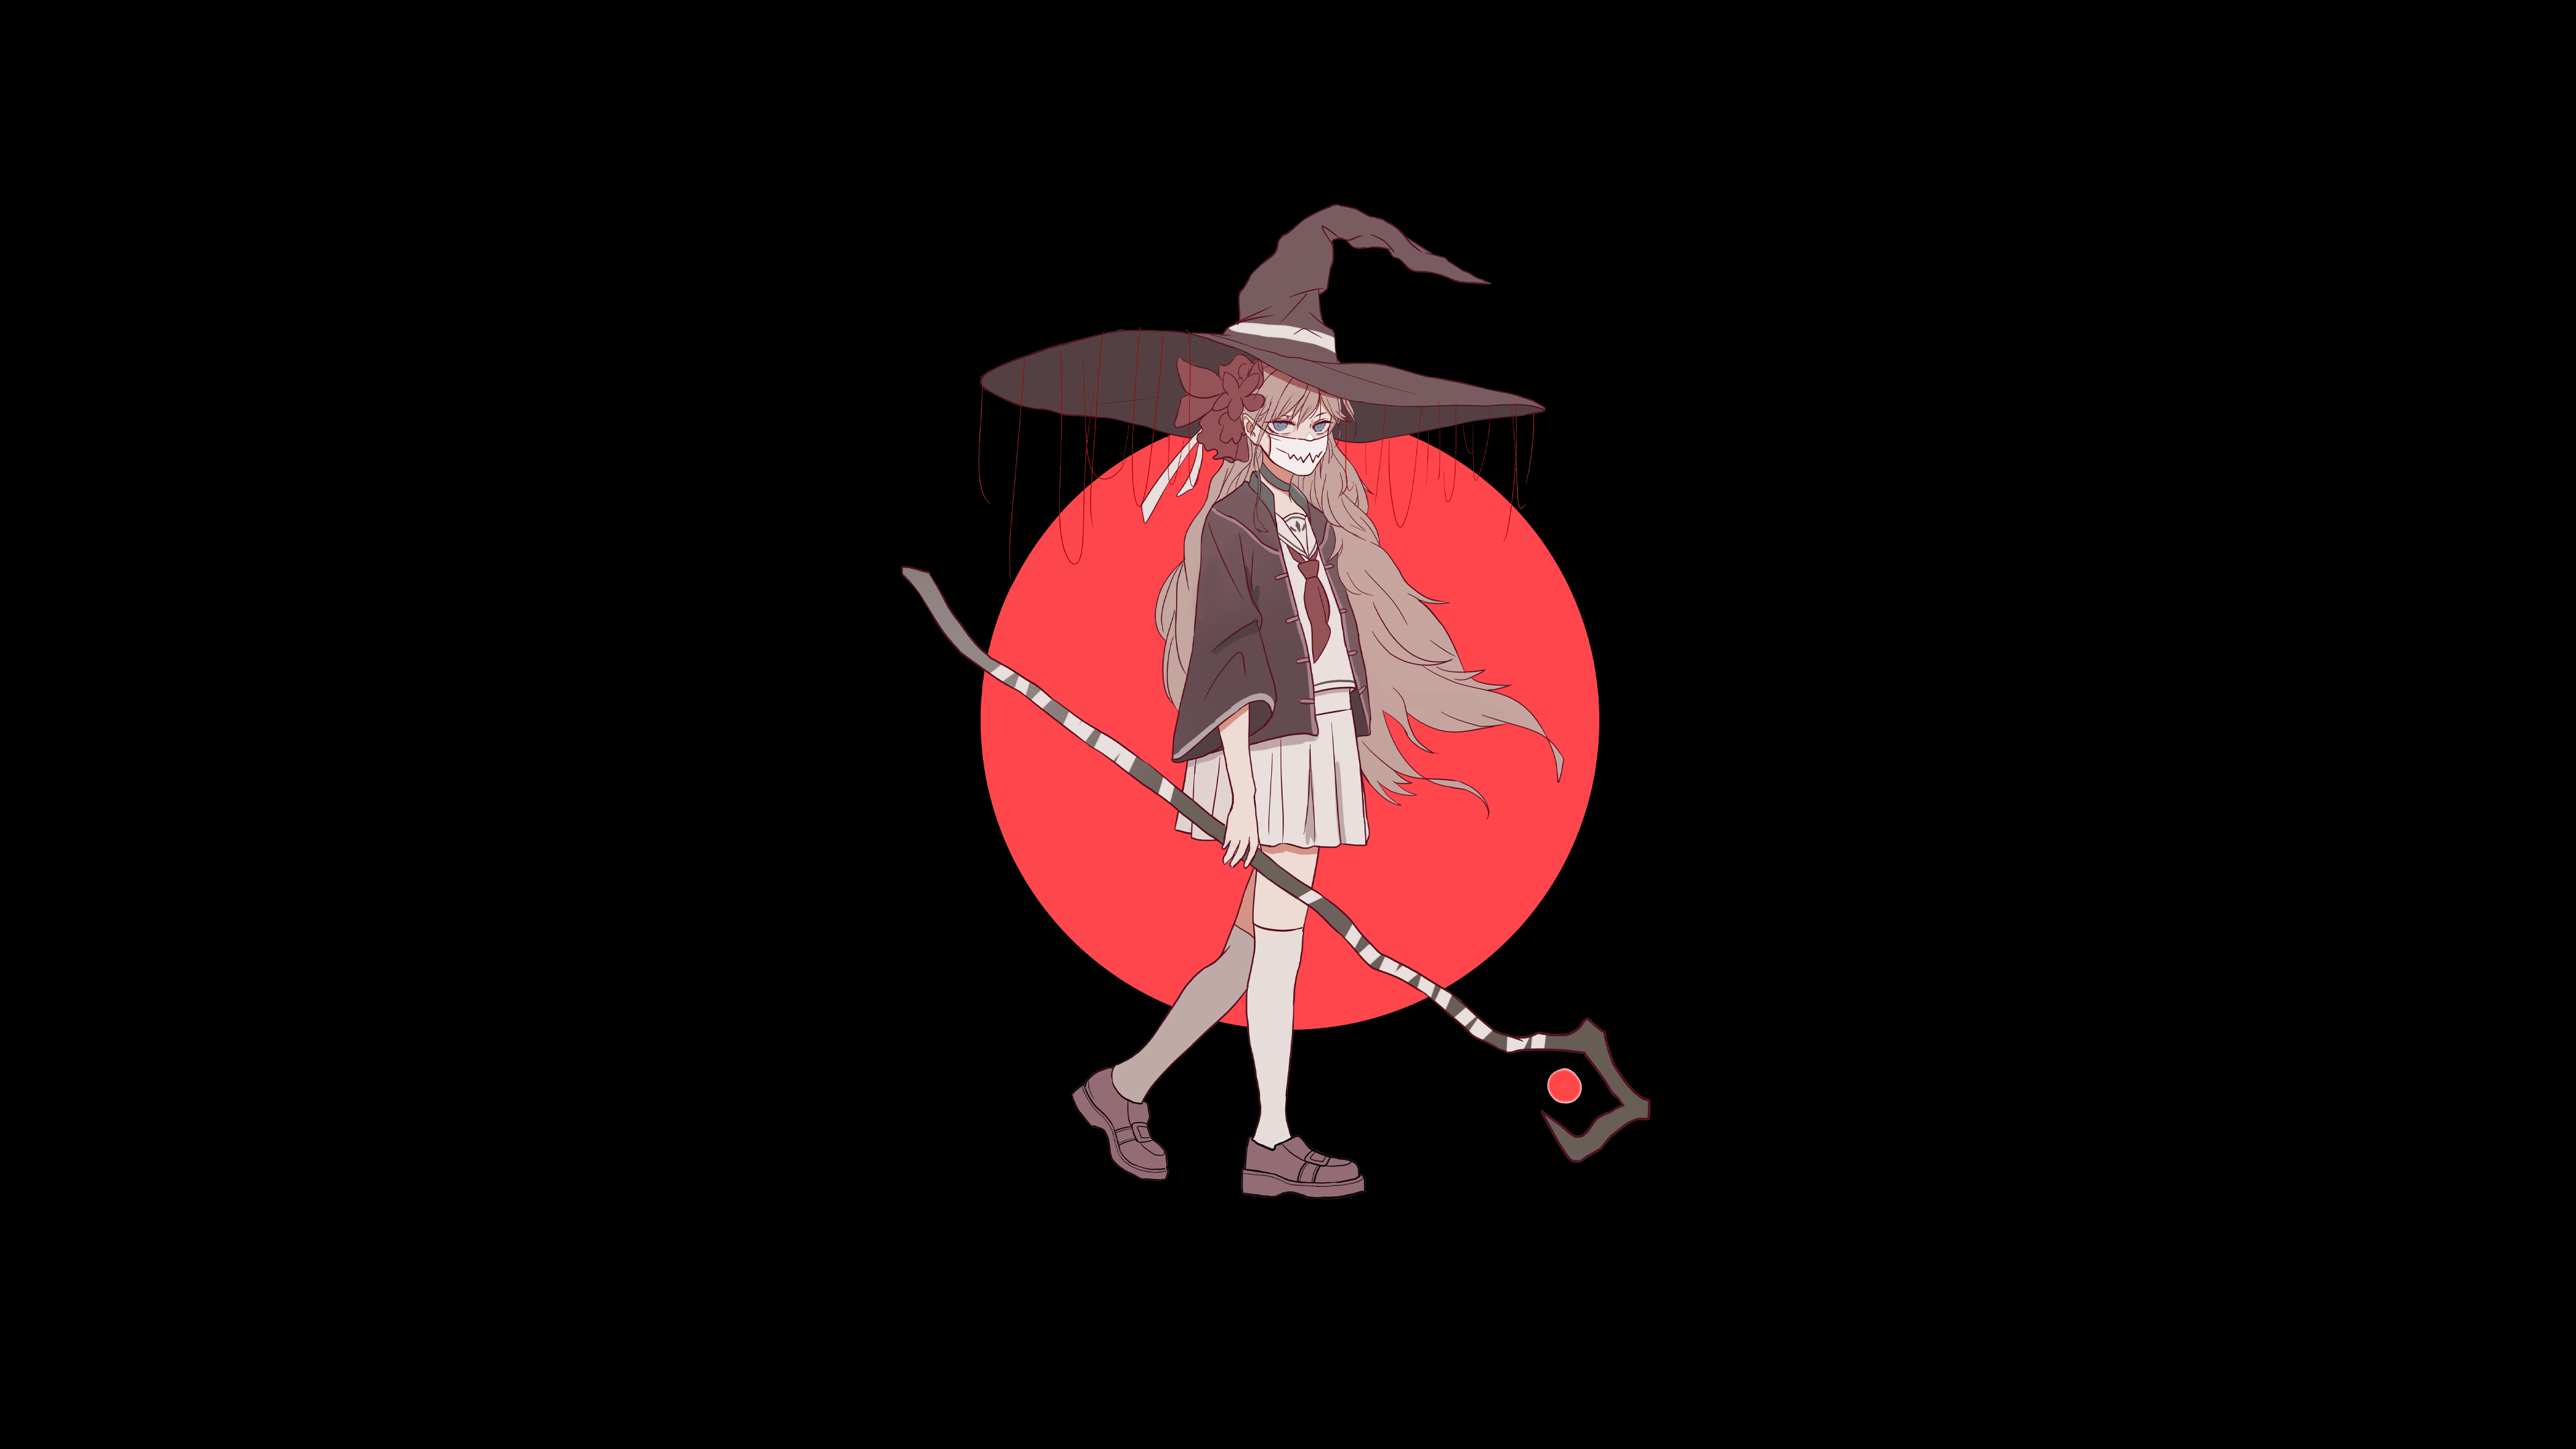 Anime 3840x2160 anime anime girls witch witch hat black background minimalism